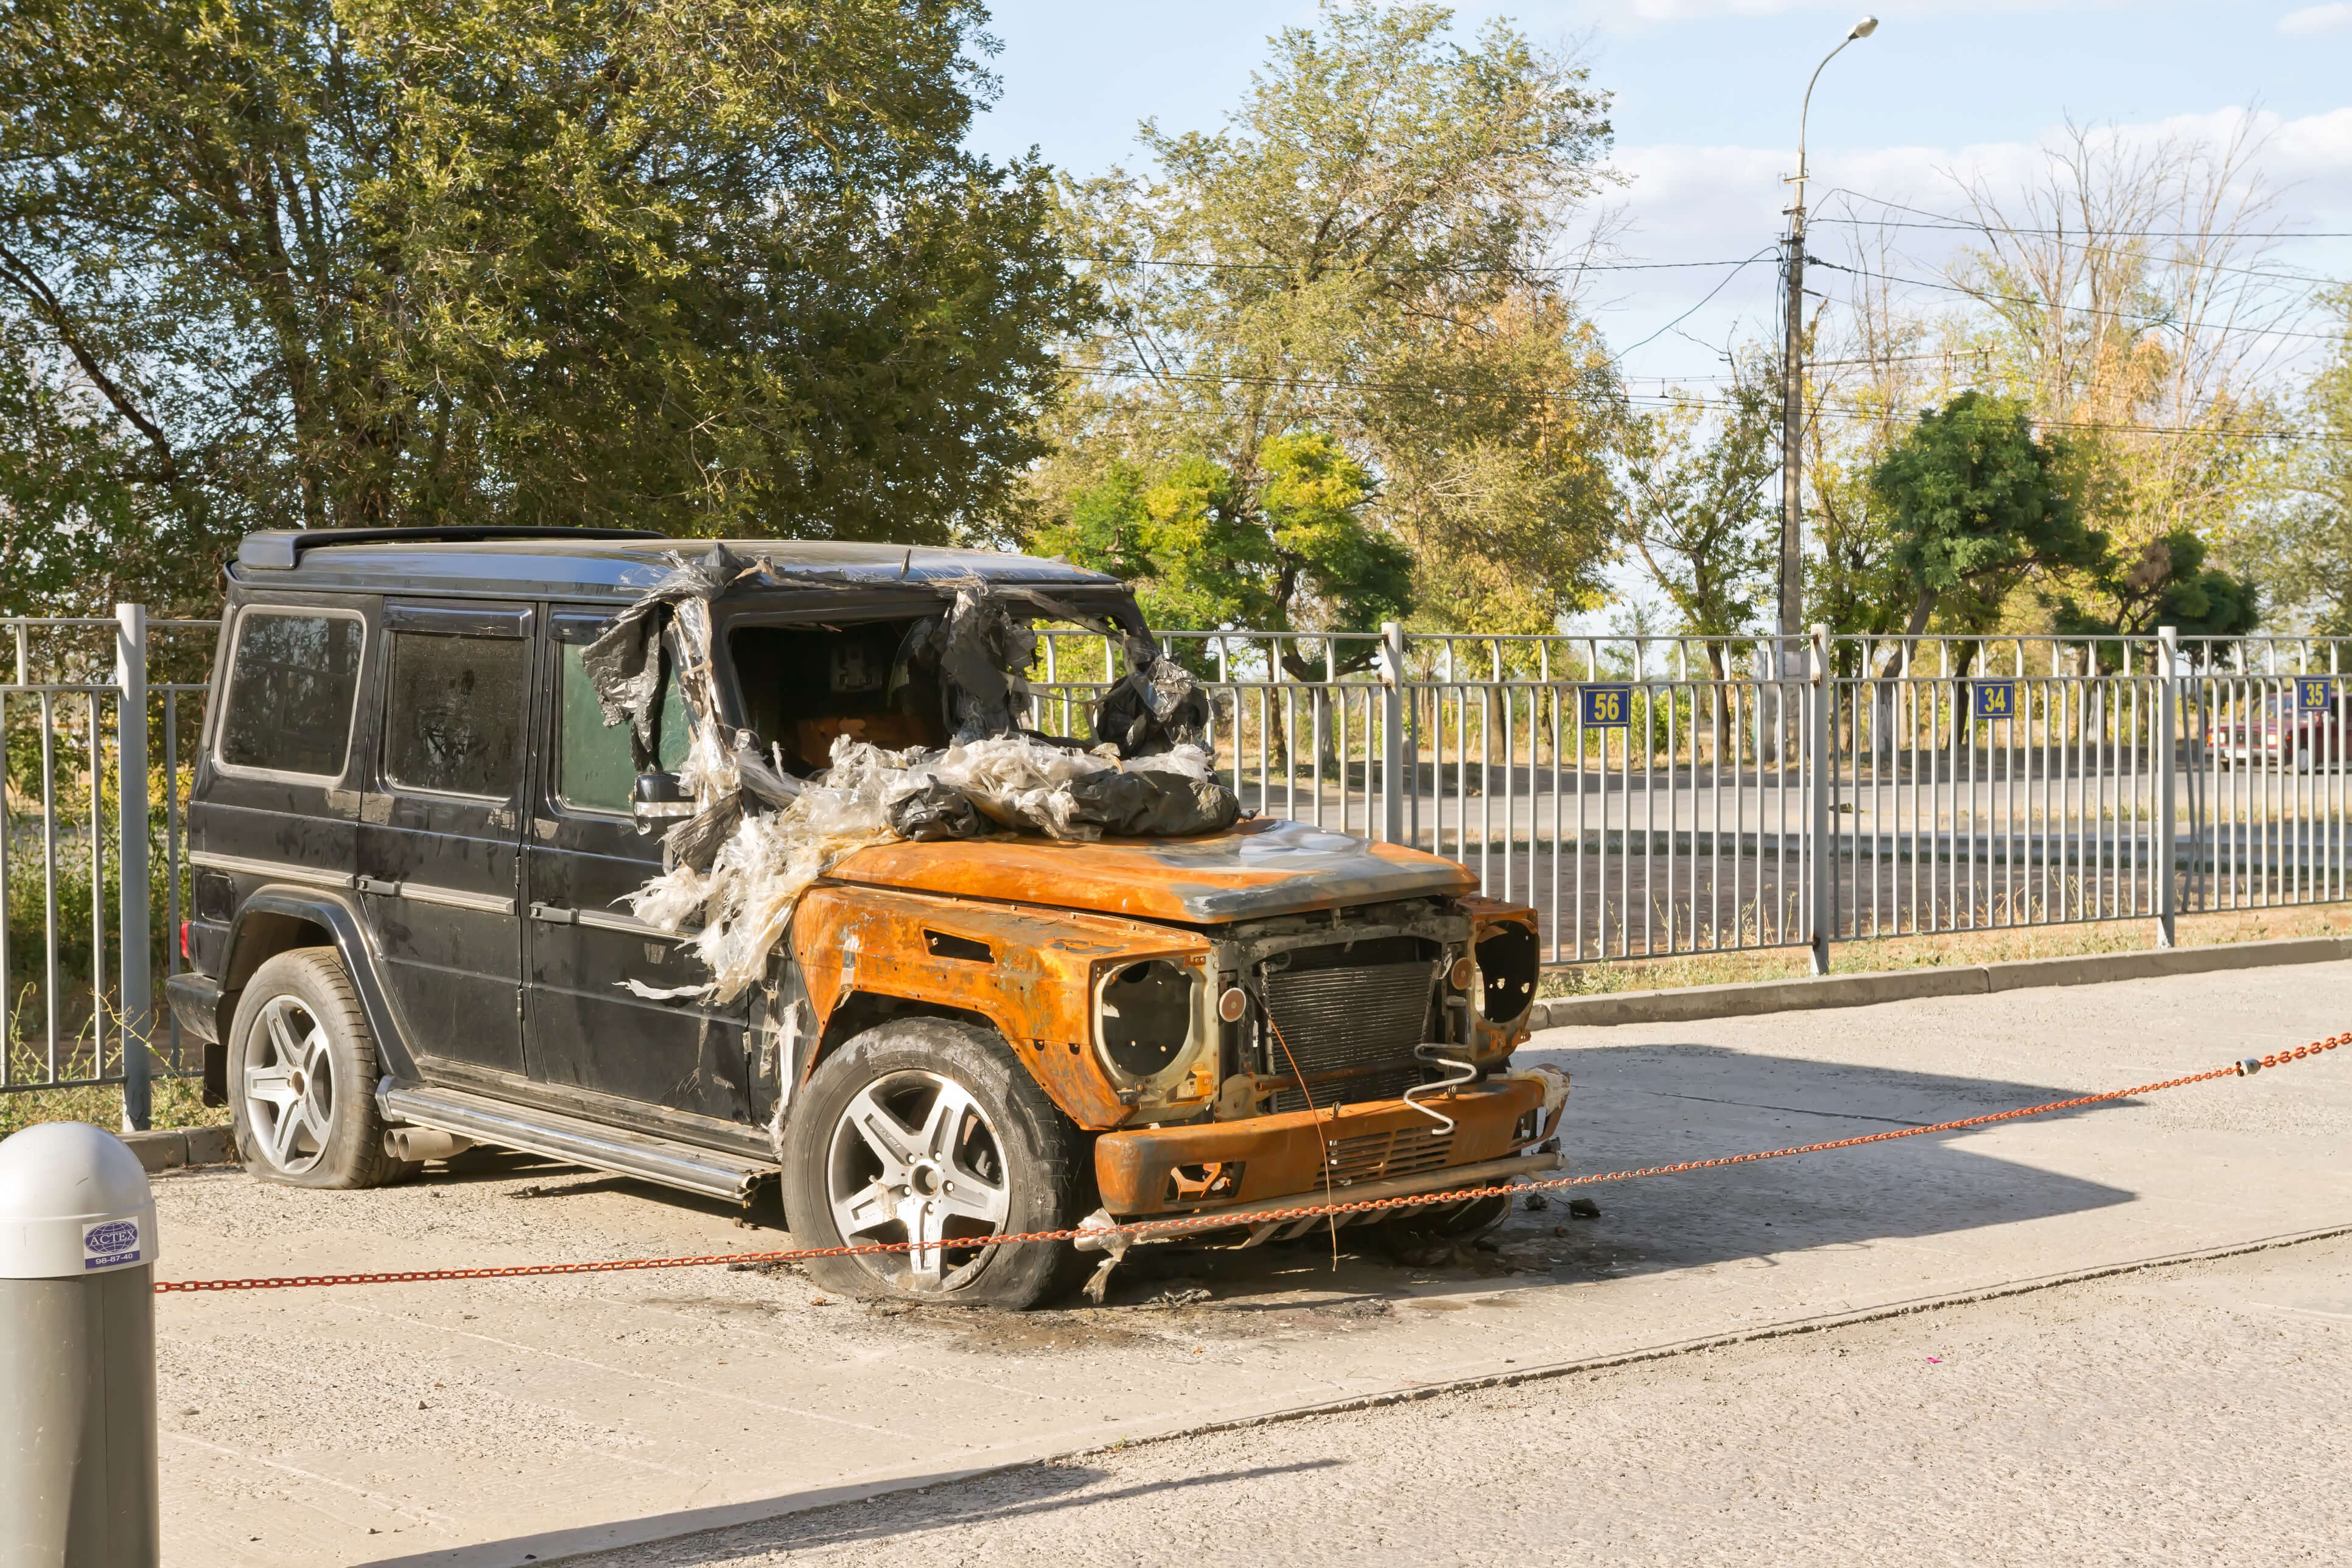 A Mercedes-Benz after a vehicle fire.